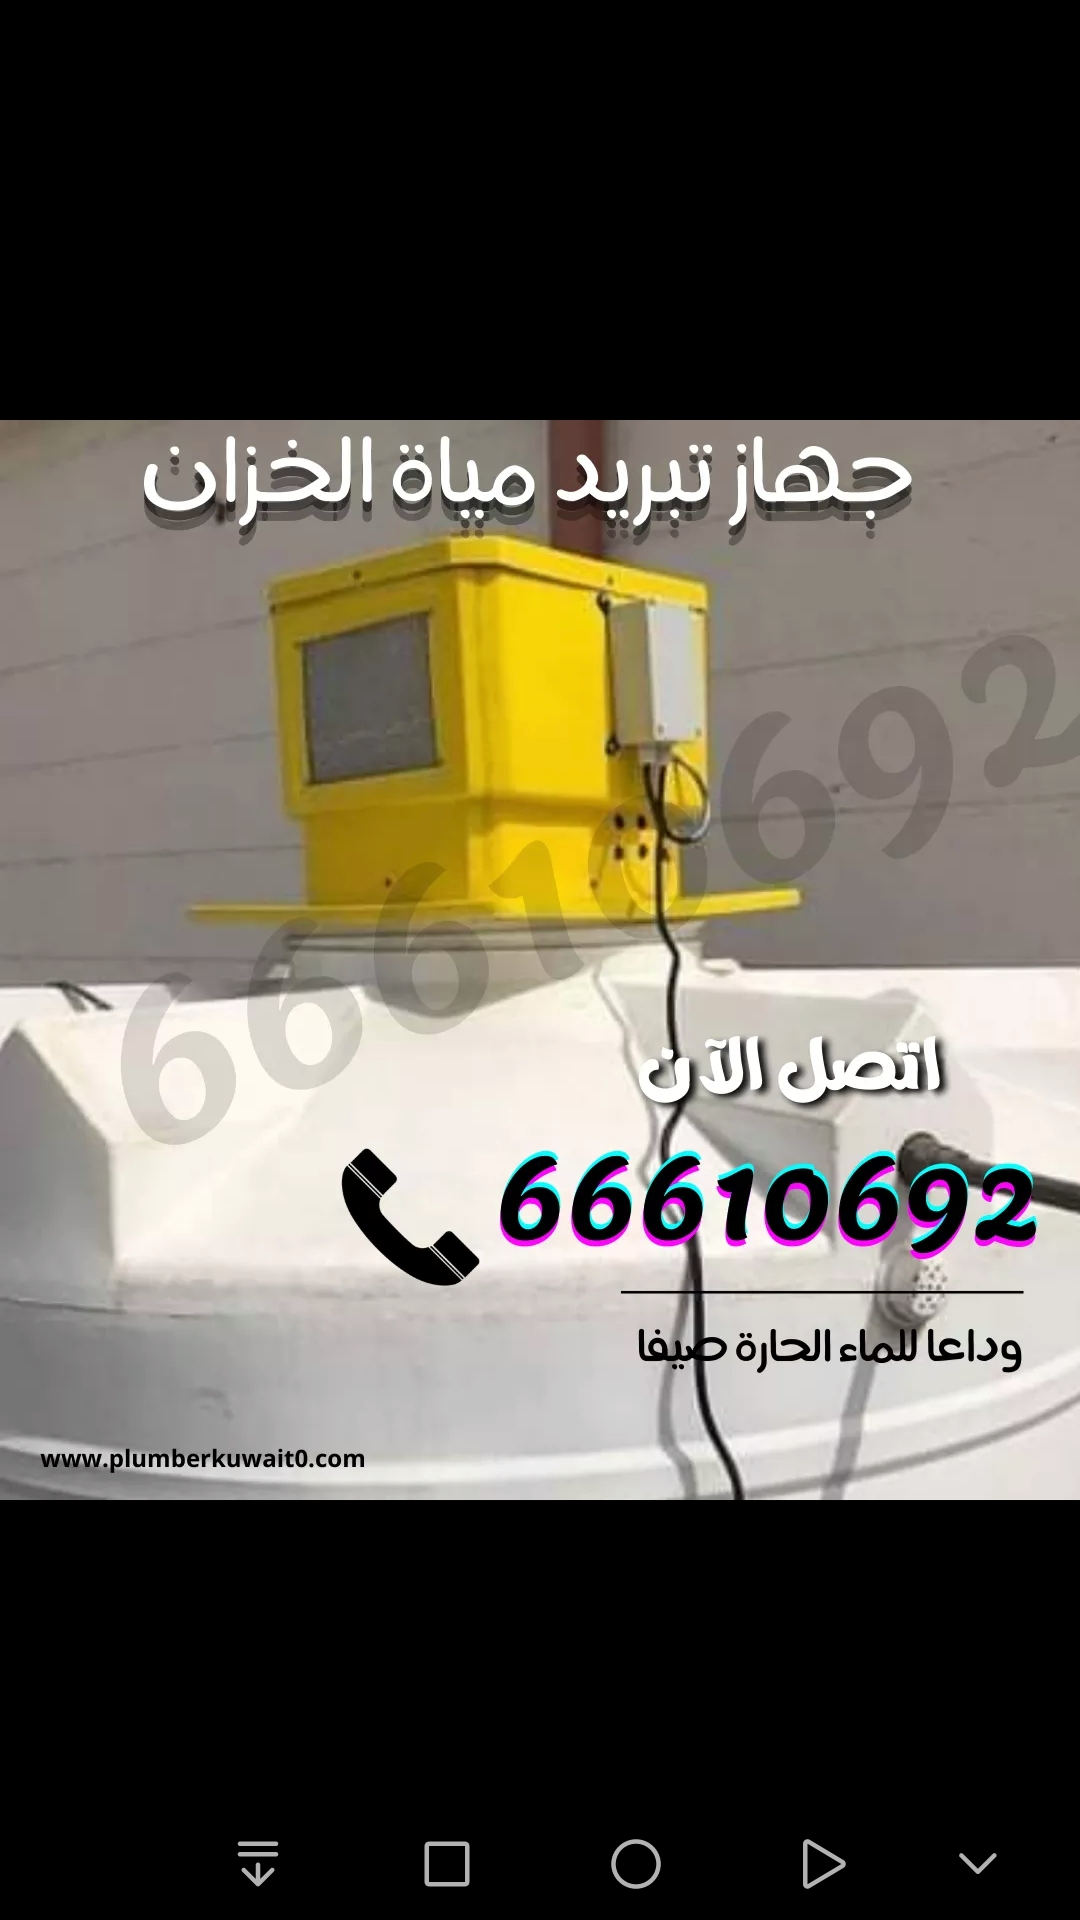 تركيب مبرد خزان مياه / 66610692 / ادوات صحية الكويت